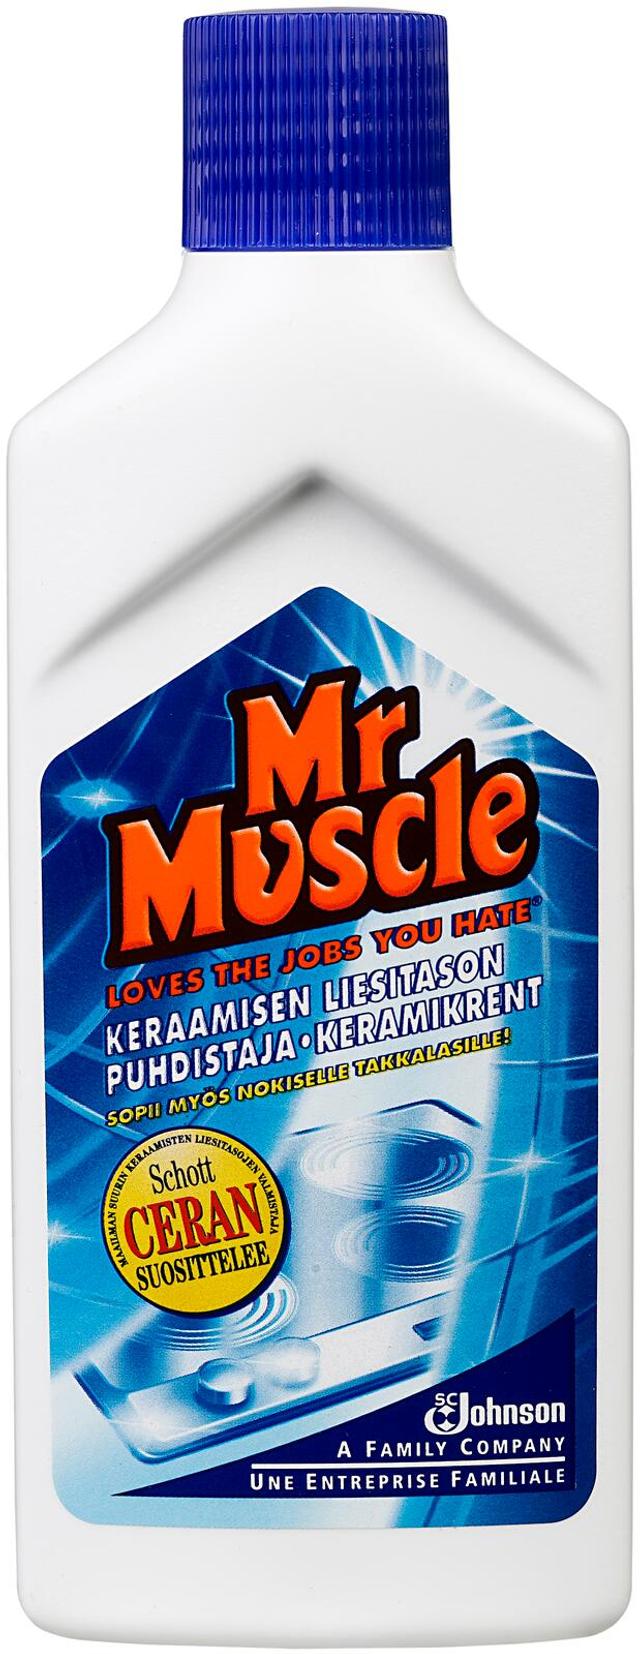 Mr Muscle 150ml keraamisen liesitason puhdistaja